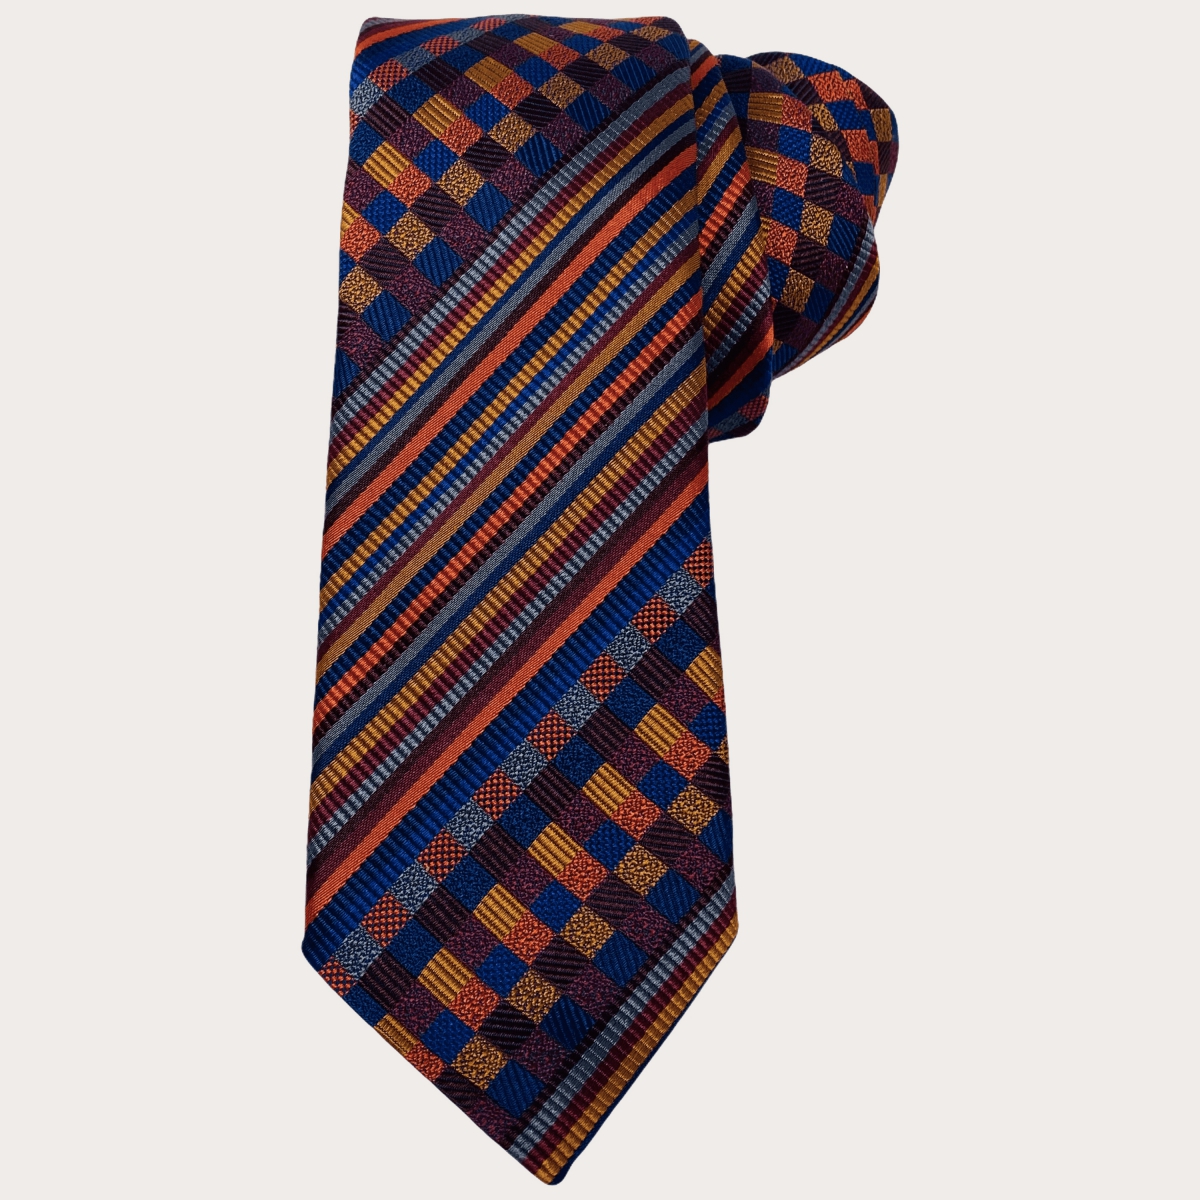 Cravate multicolore en soie